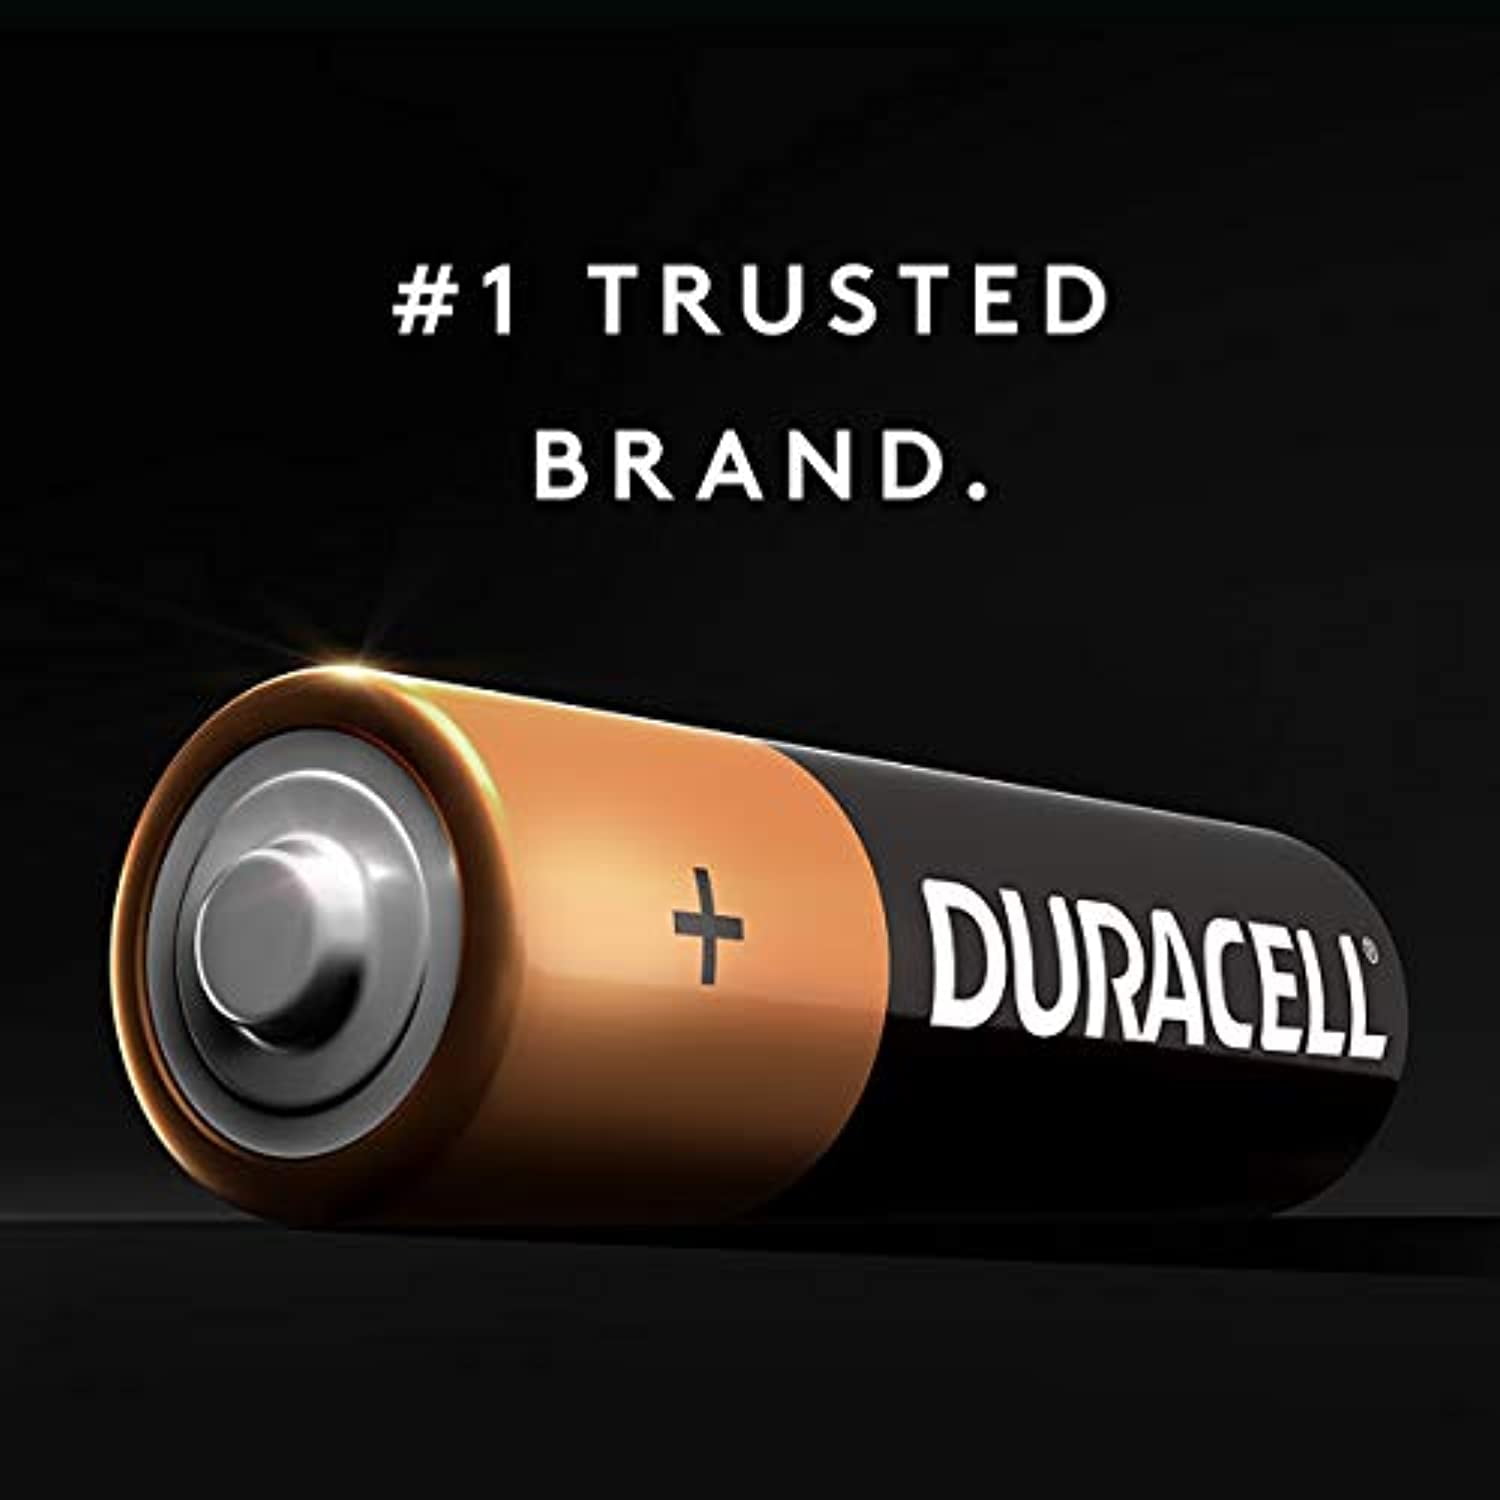 Duracell Pile bouton lithium Duracell spéciale 2016 3 V, pack de 2